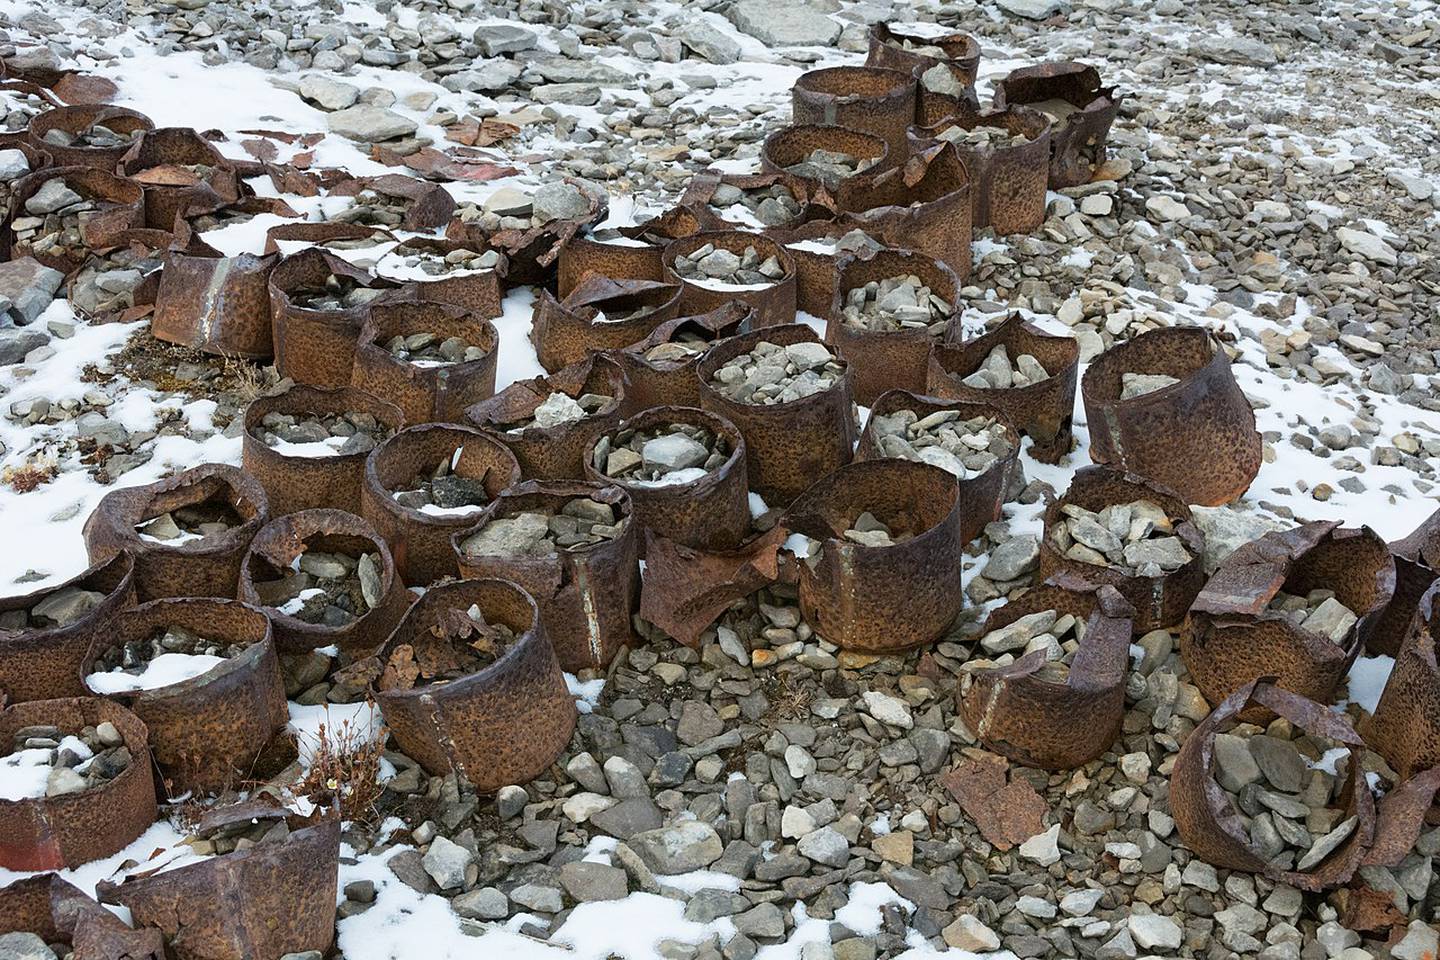 Hermetikk fra Franklinekspedisjonen, funnet på King Williamsøya. Franklins ekspedisjon hadde med seg 8.000 bokser med mat. Senere forskning mener at bly fra boksene kan ha ført til blyforgiftning.